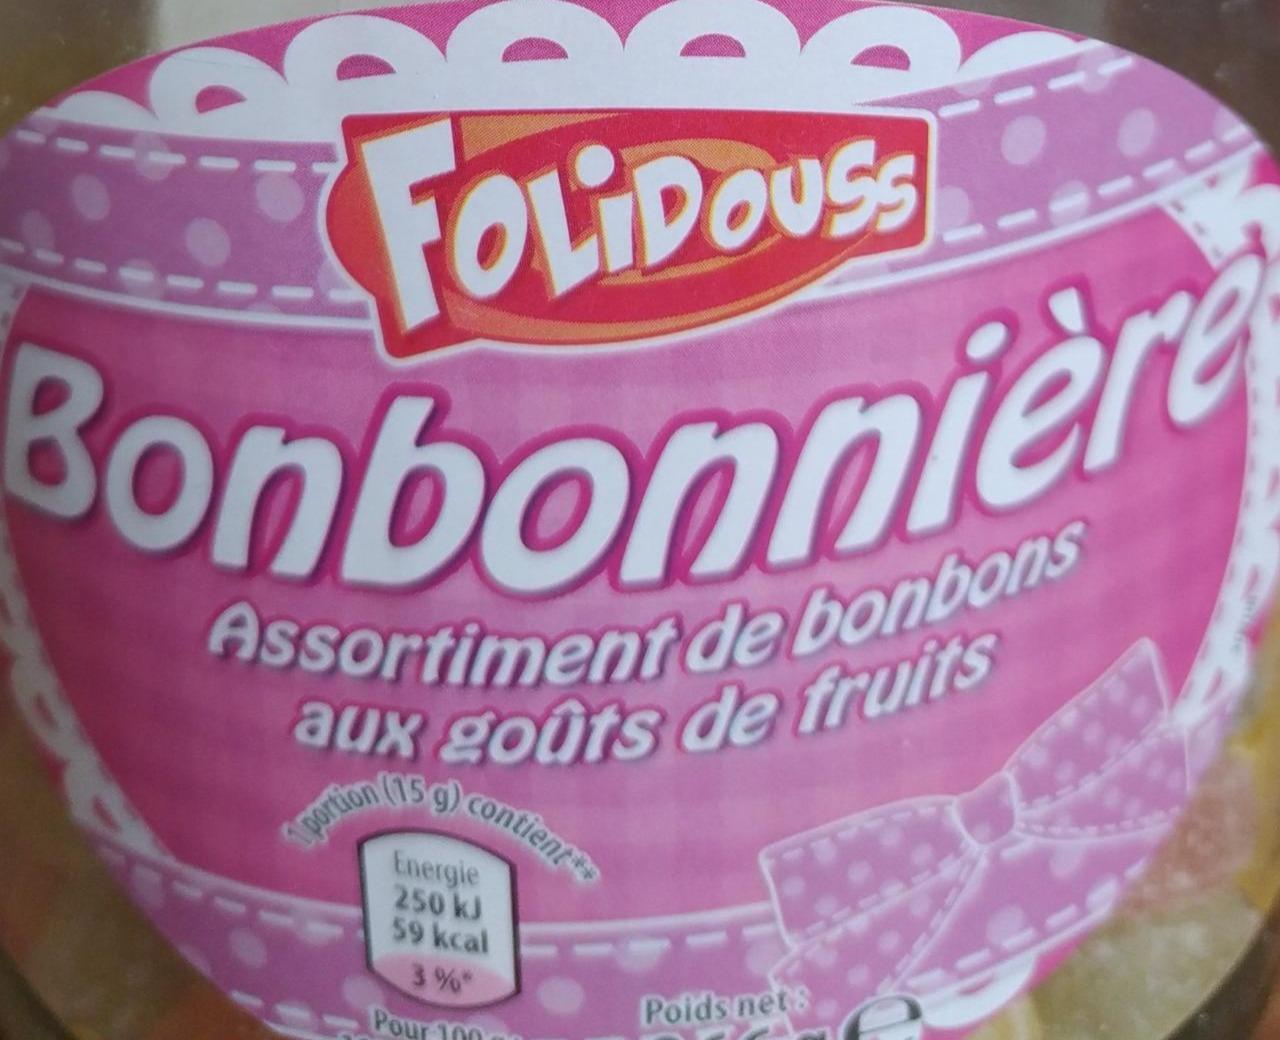 Фото - Асорті цукерок з фруктовим смаком Bonbonnière Folidouss